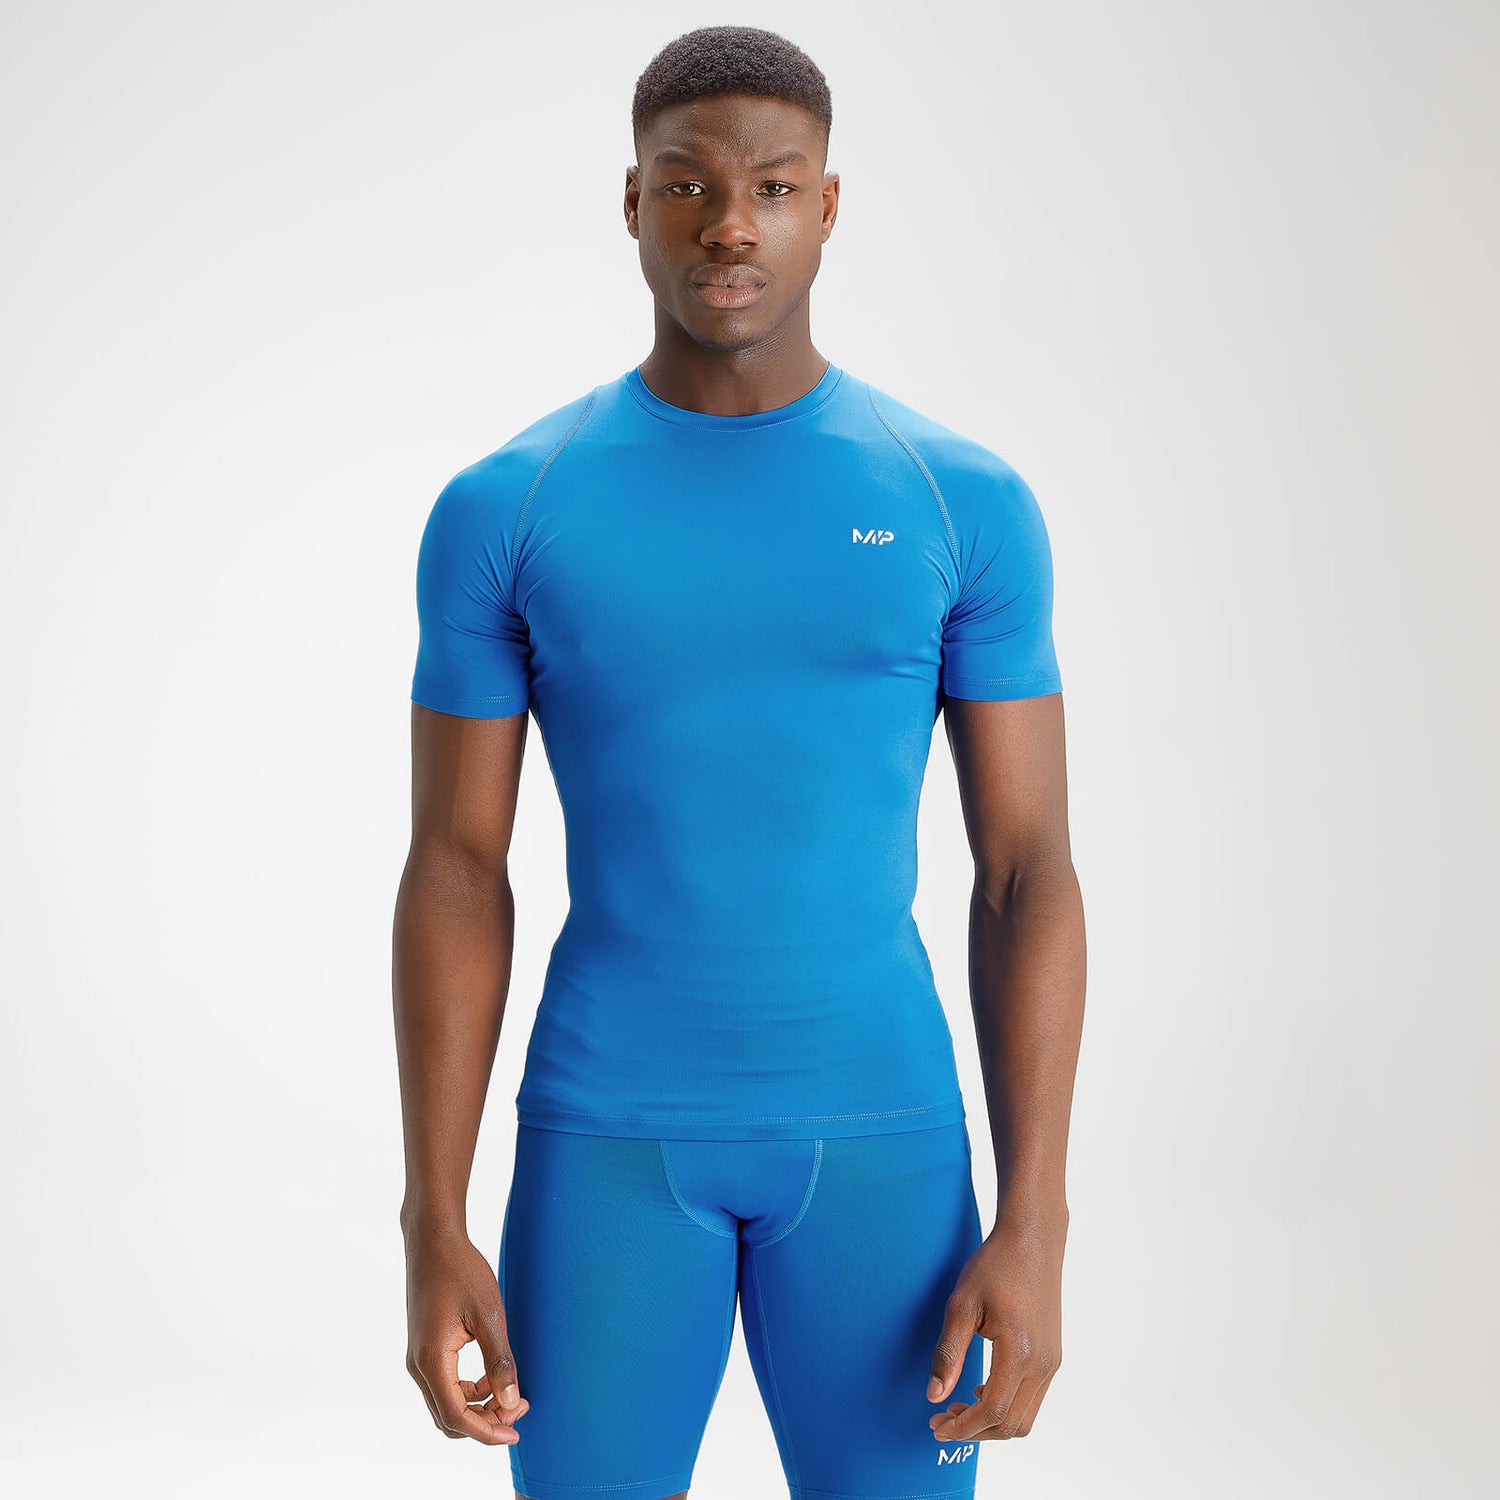 MP Men's Essentials Training Baselayer Short Sleeve Top - True Blue - XXXL